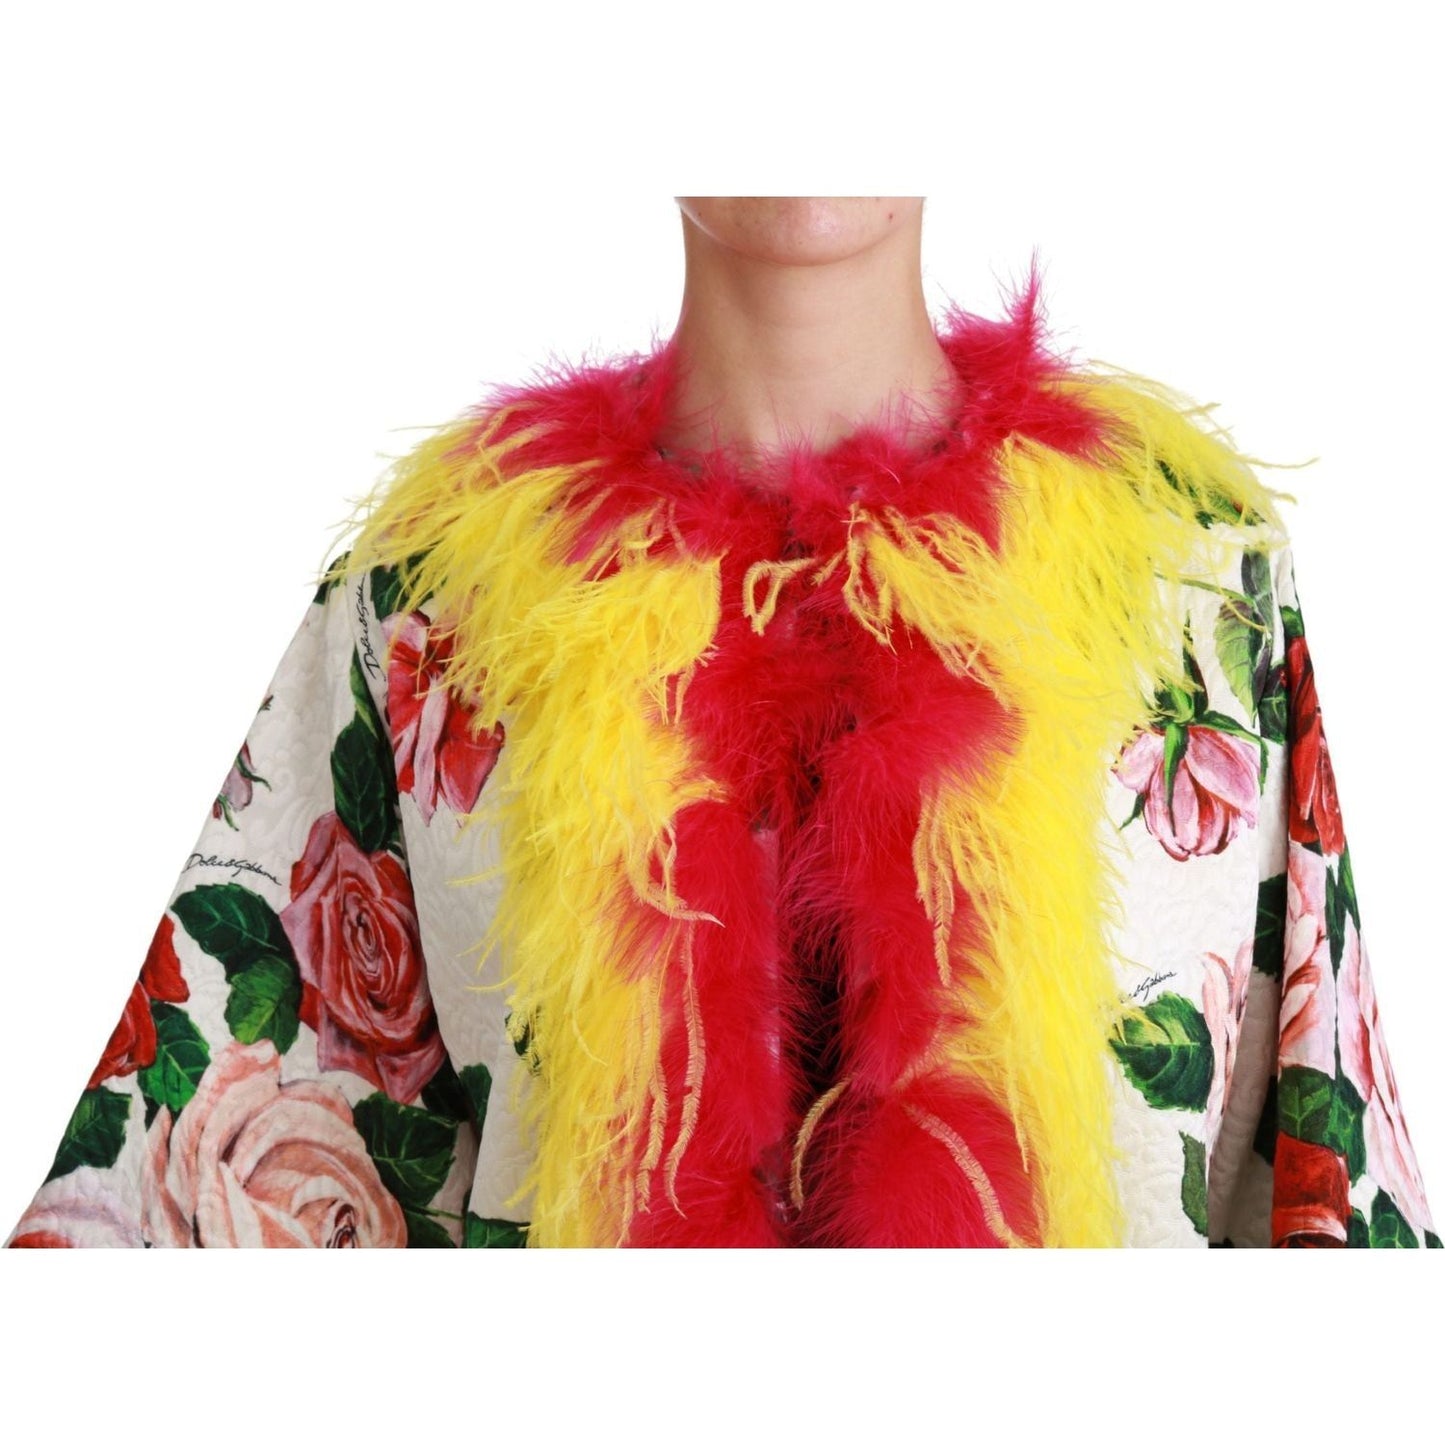 Dolce & Gabbana Elegant Floral Cape Jacket with Fur Details Coats & Jackets white-floral-coat-capte-fur-roses-jacket